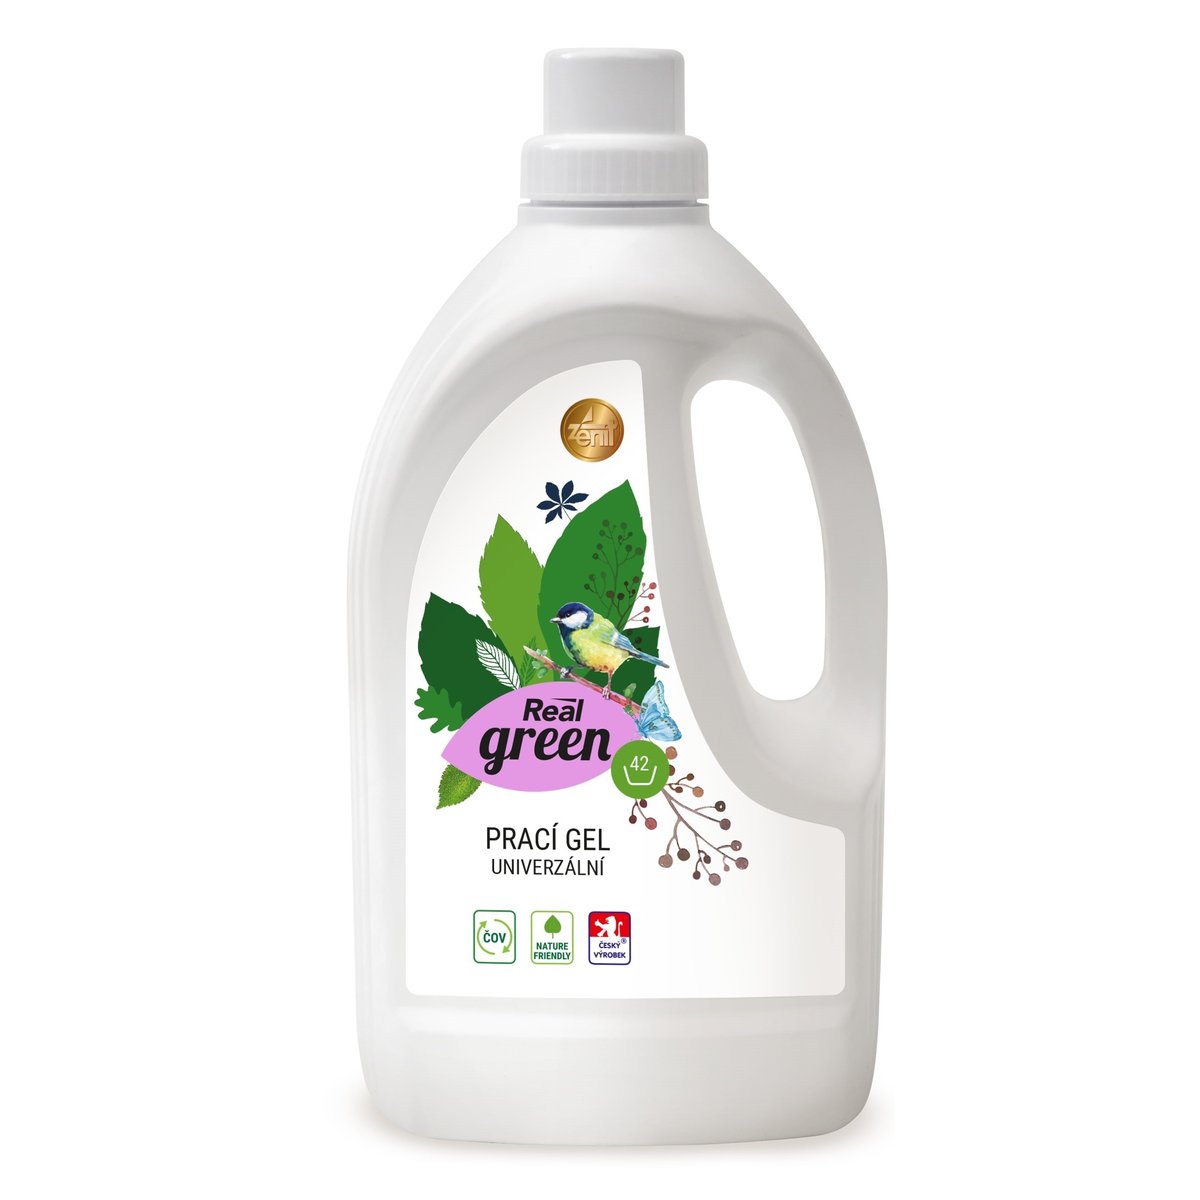 Real Green Clean Prací gel univerzální (1,5 l)